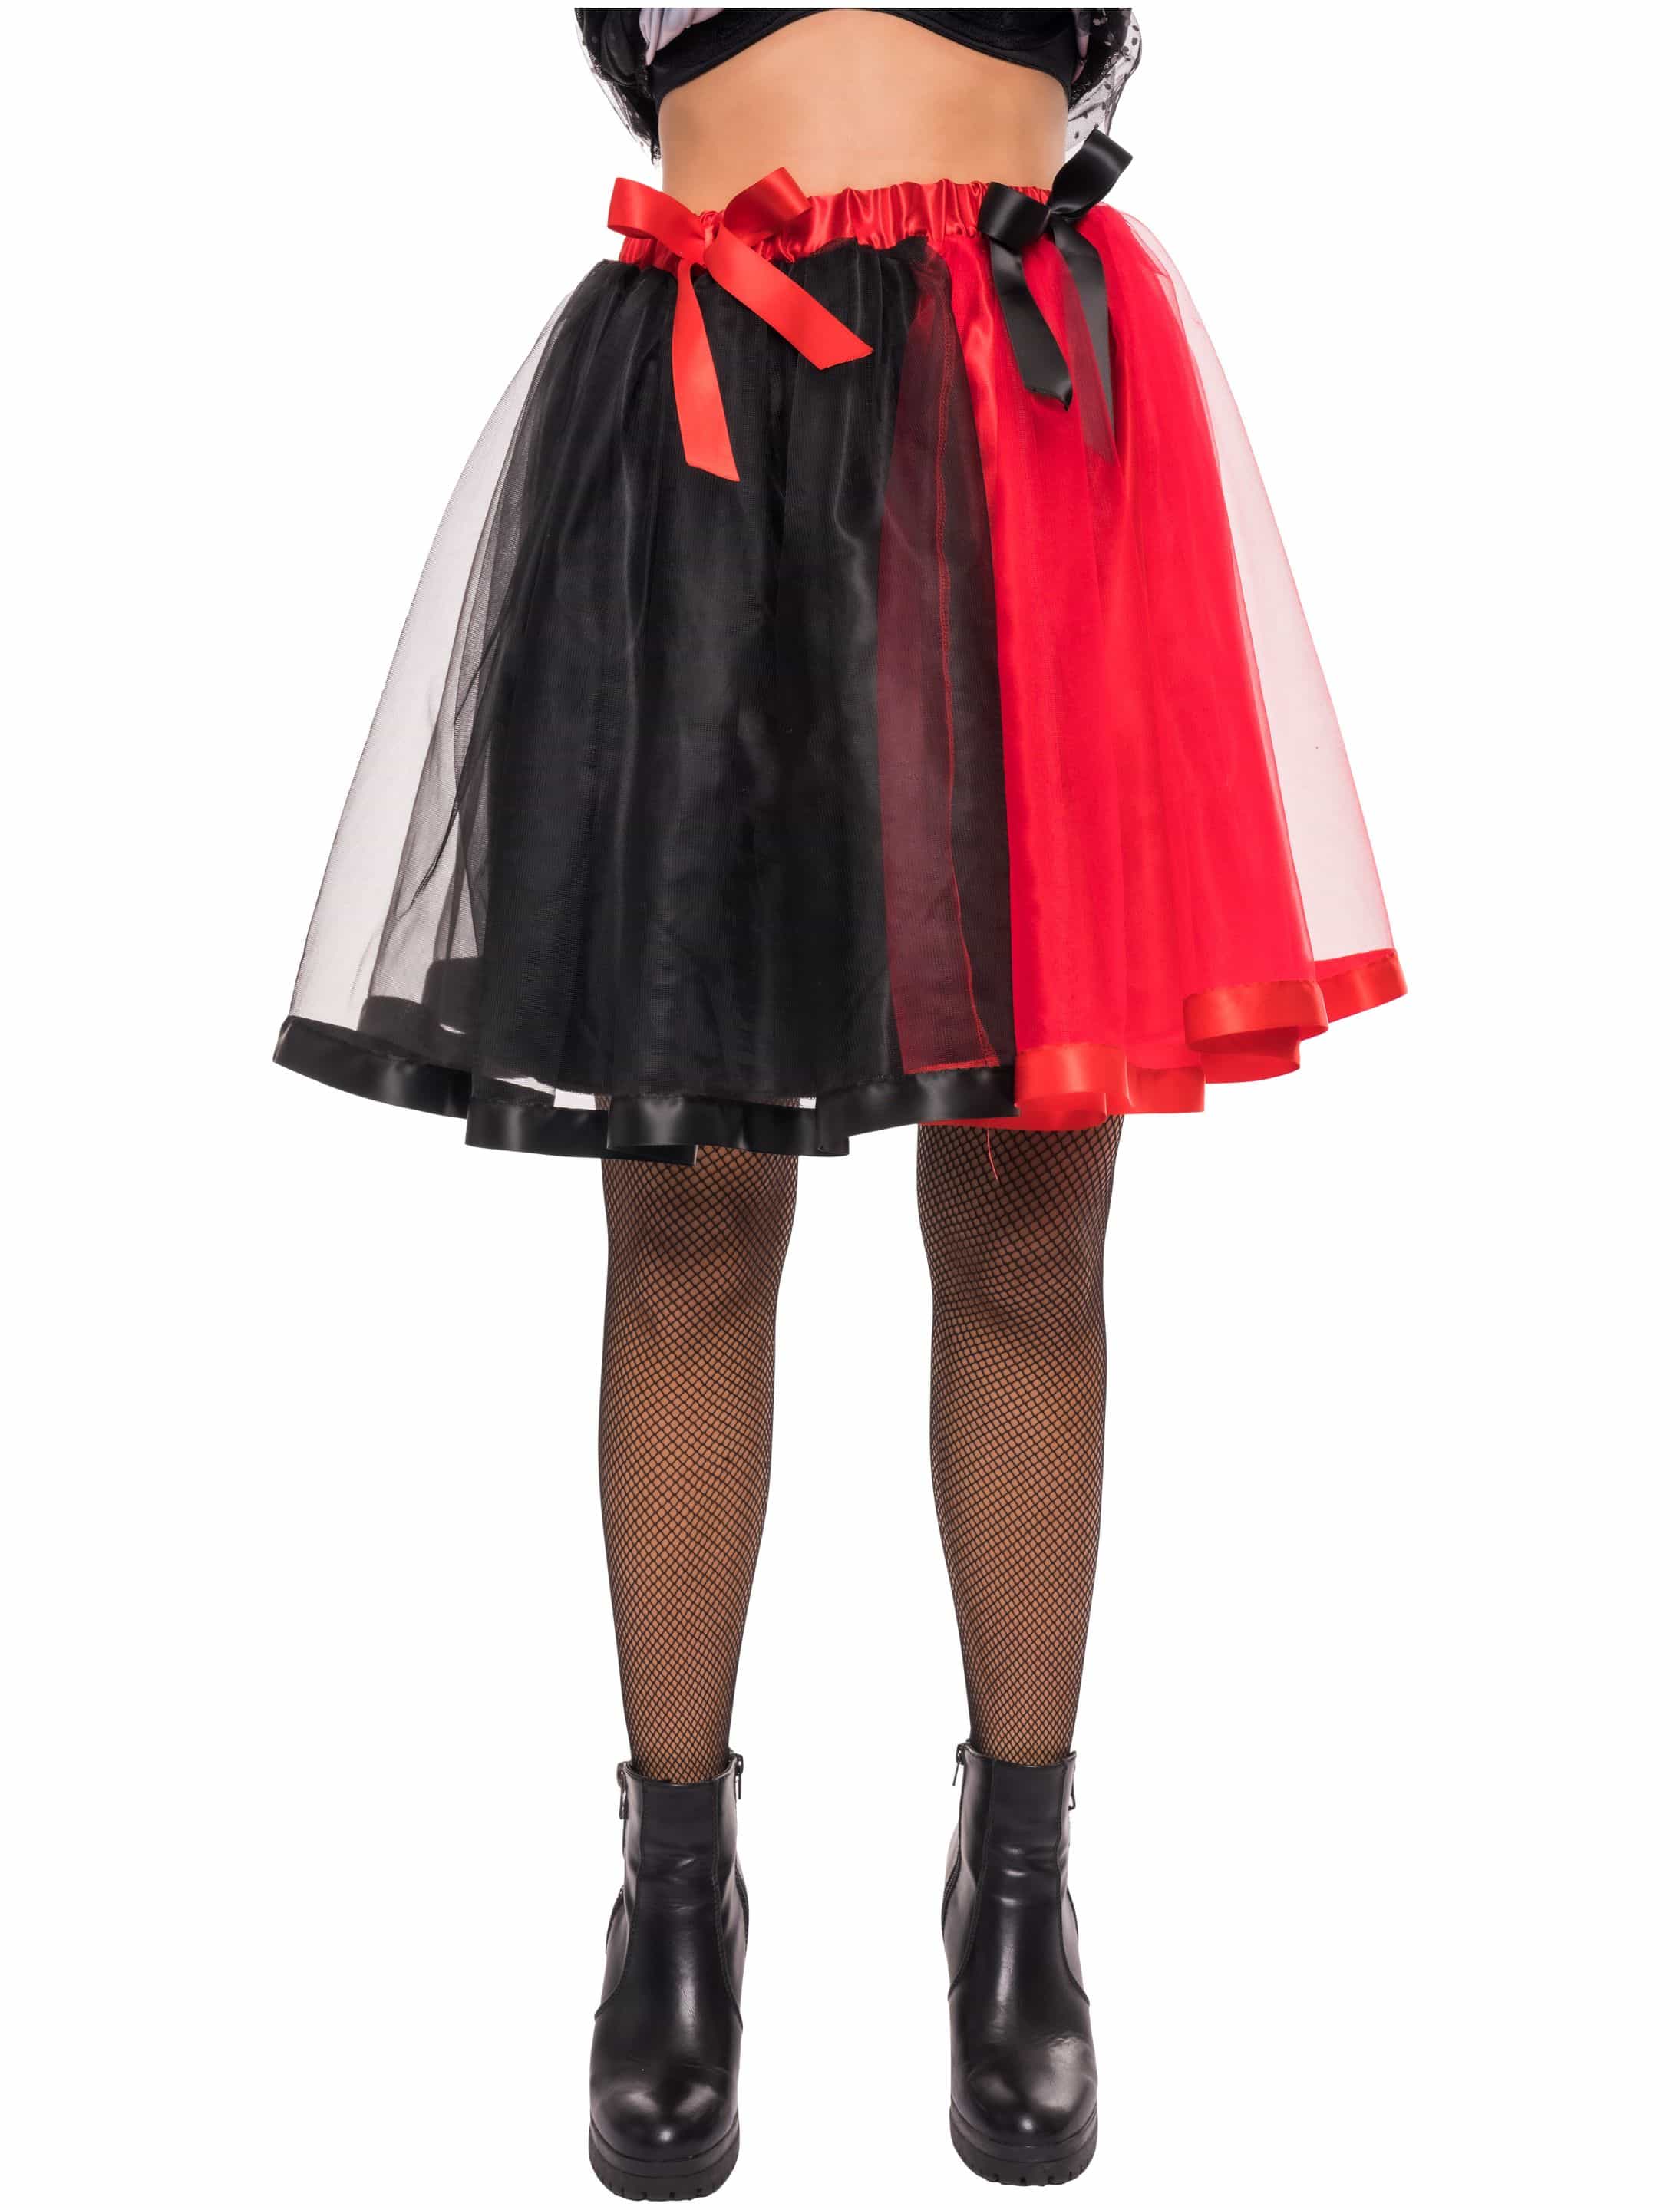 Petticoat Damen schwarz/rot one size